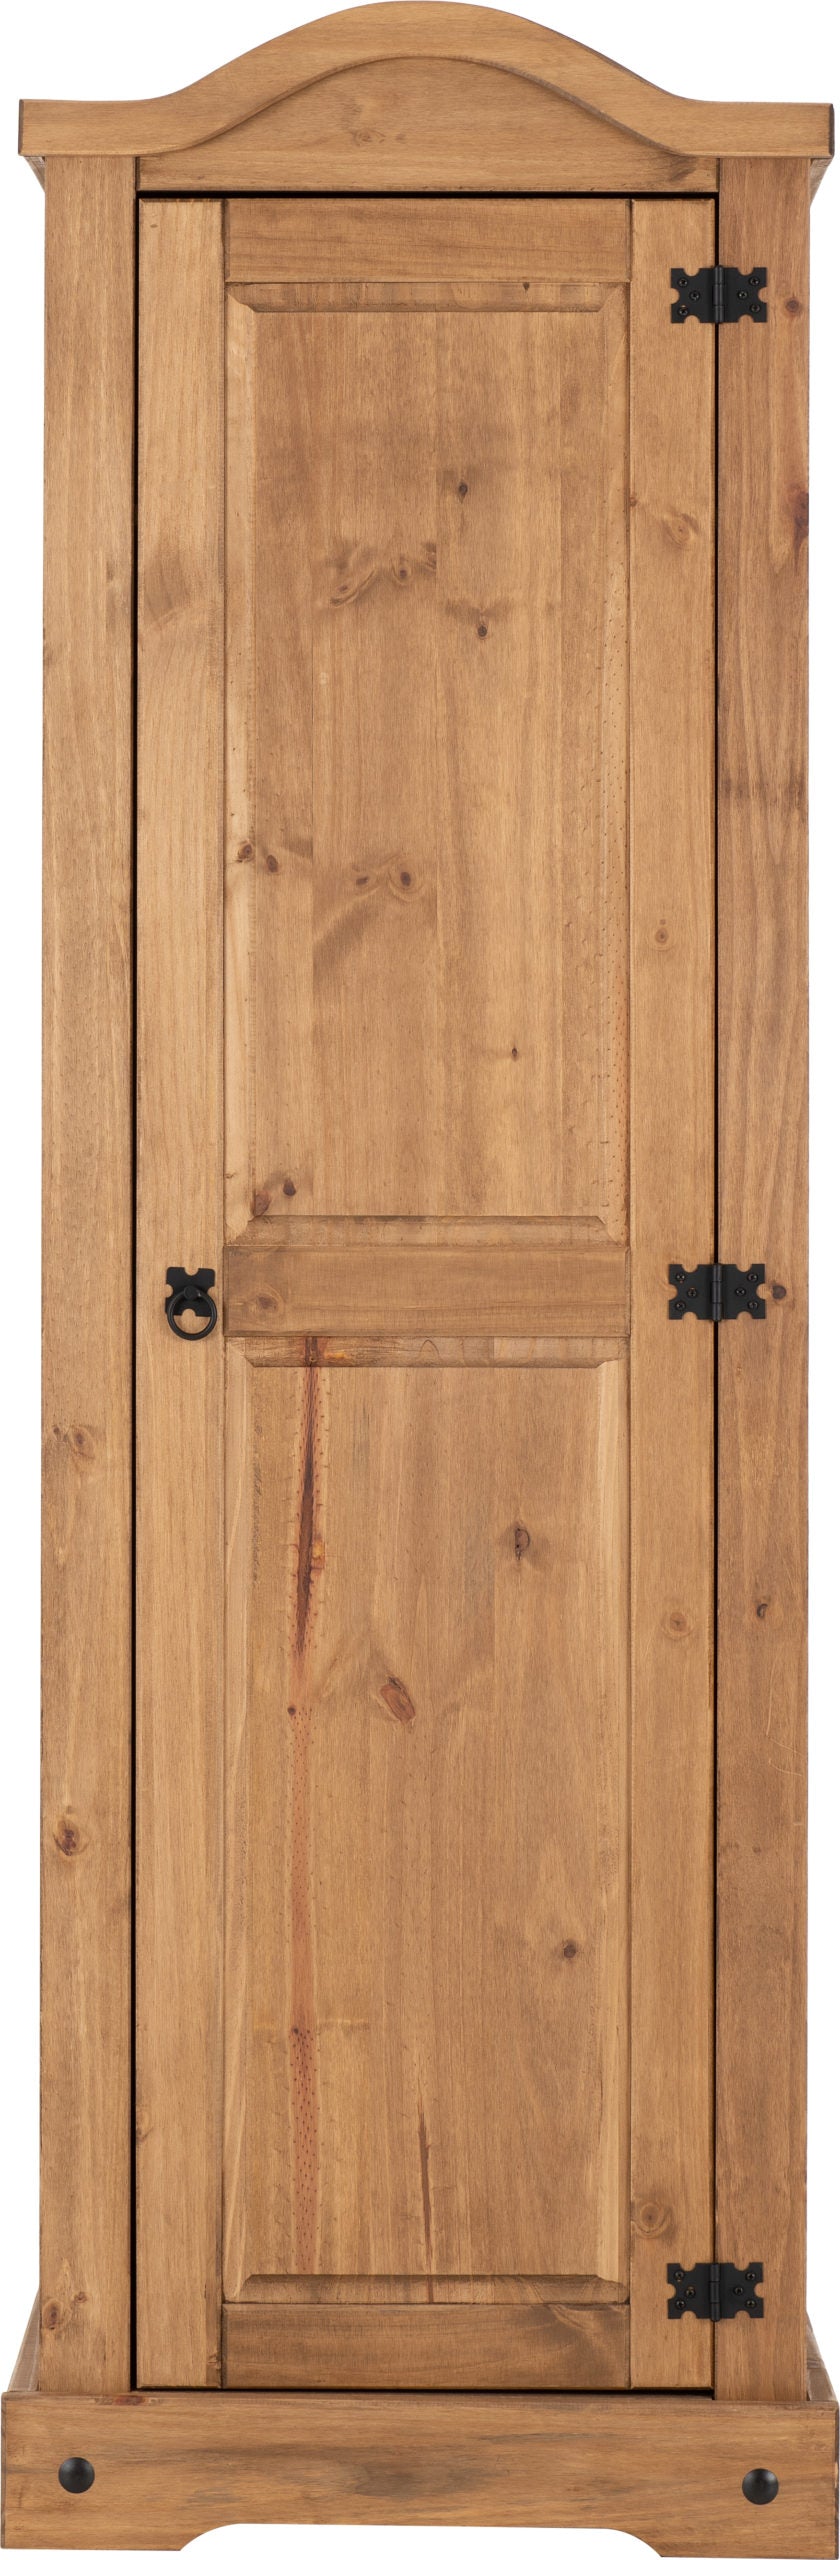 Corona 1 Door Wardrobe - Distressed Waxed Pine - The Right Buy Store